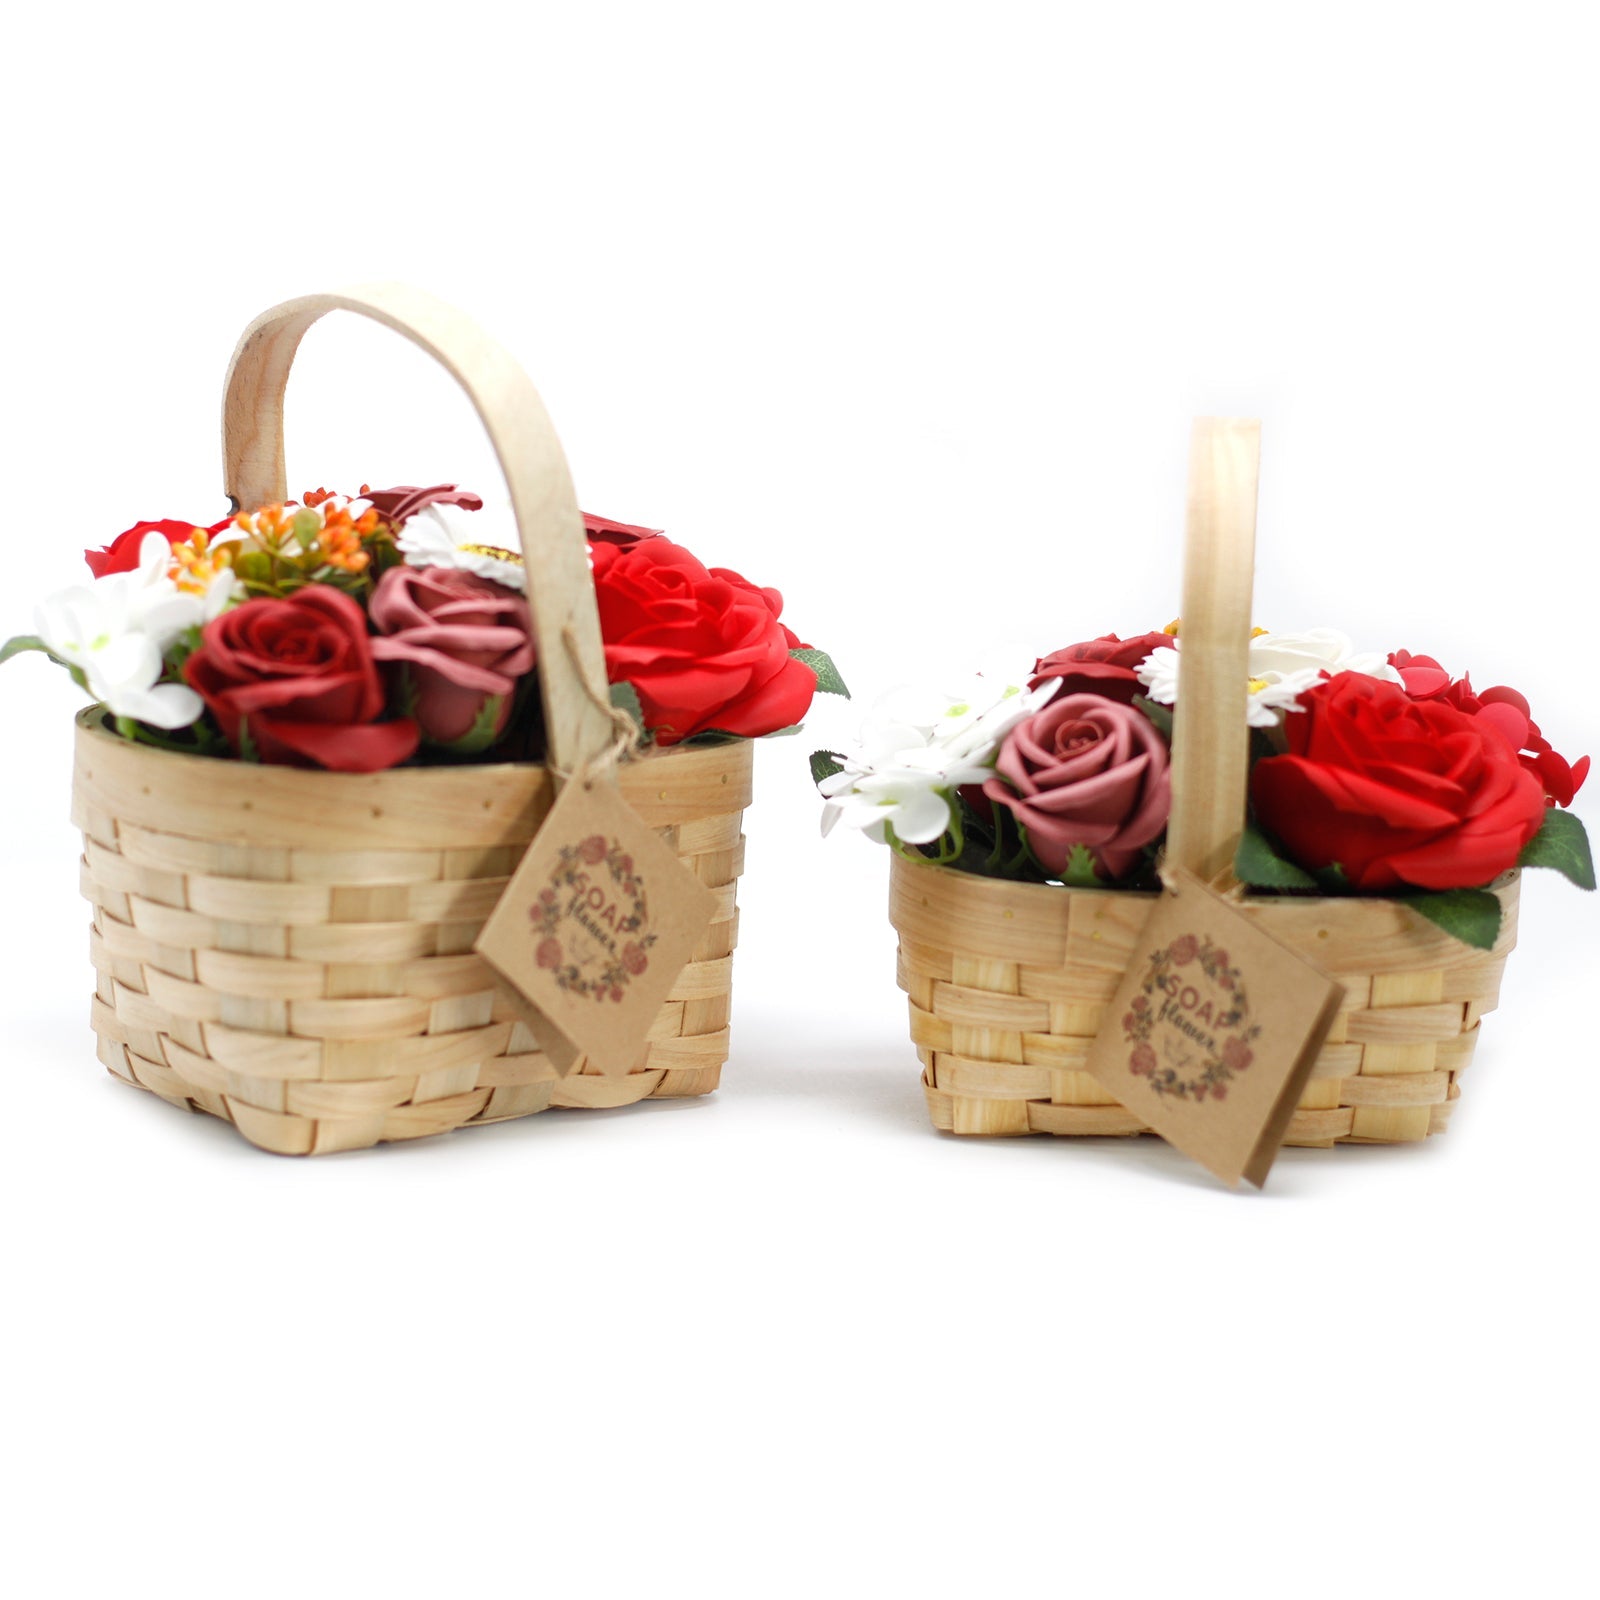 Medium Red Bouquet of Soap Flowers in Wicker Basket - Ultrabee